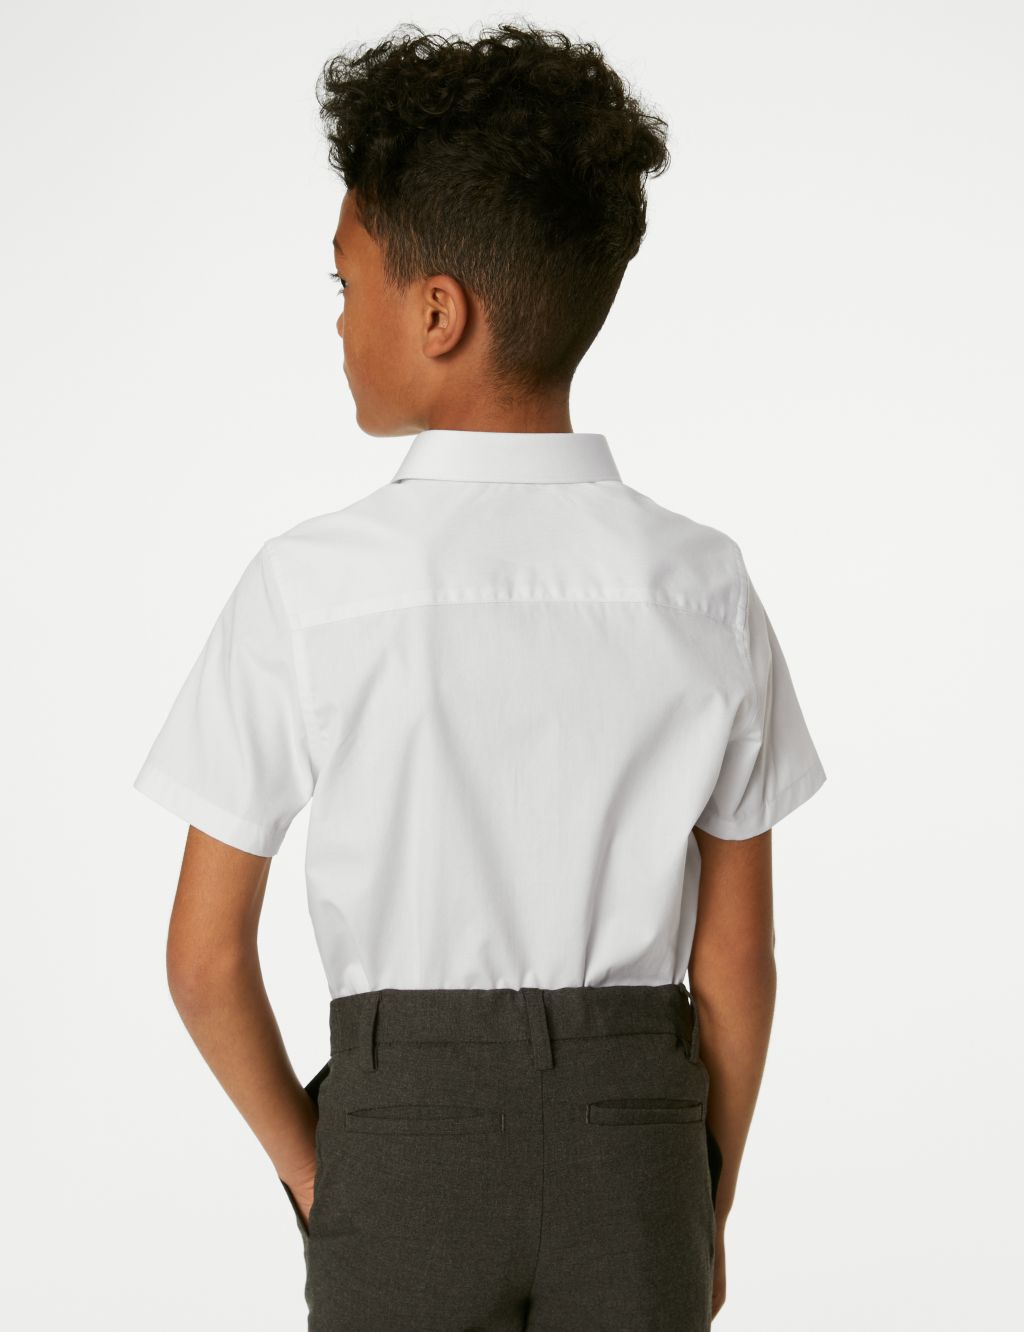 2pk Boys' Slim Fit Cotton School Shirts (2-18 Yrs) image 5